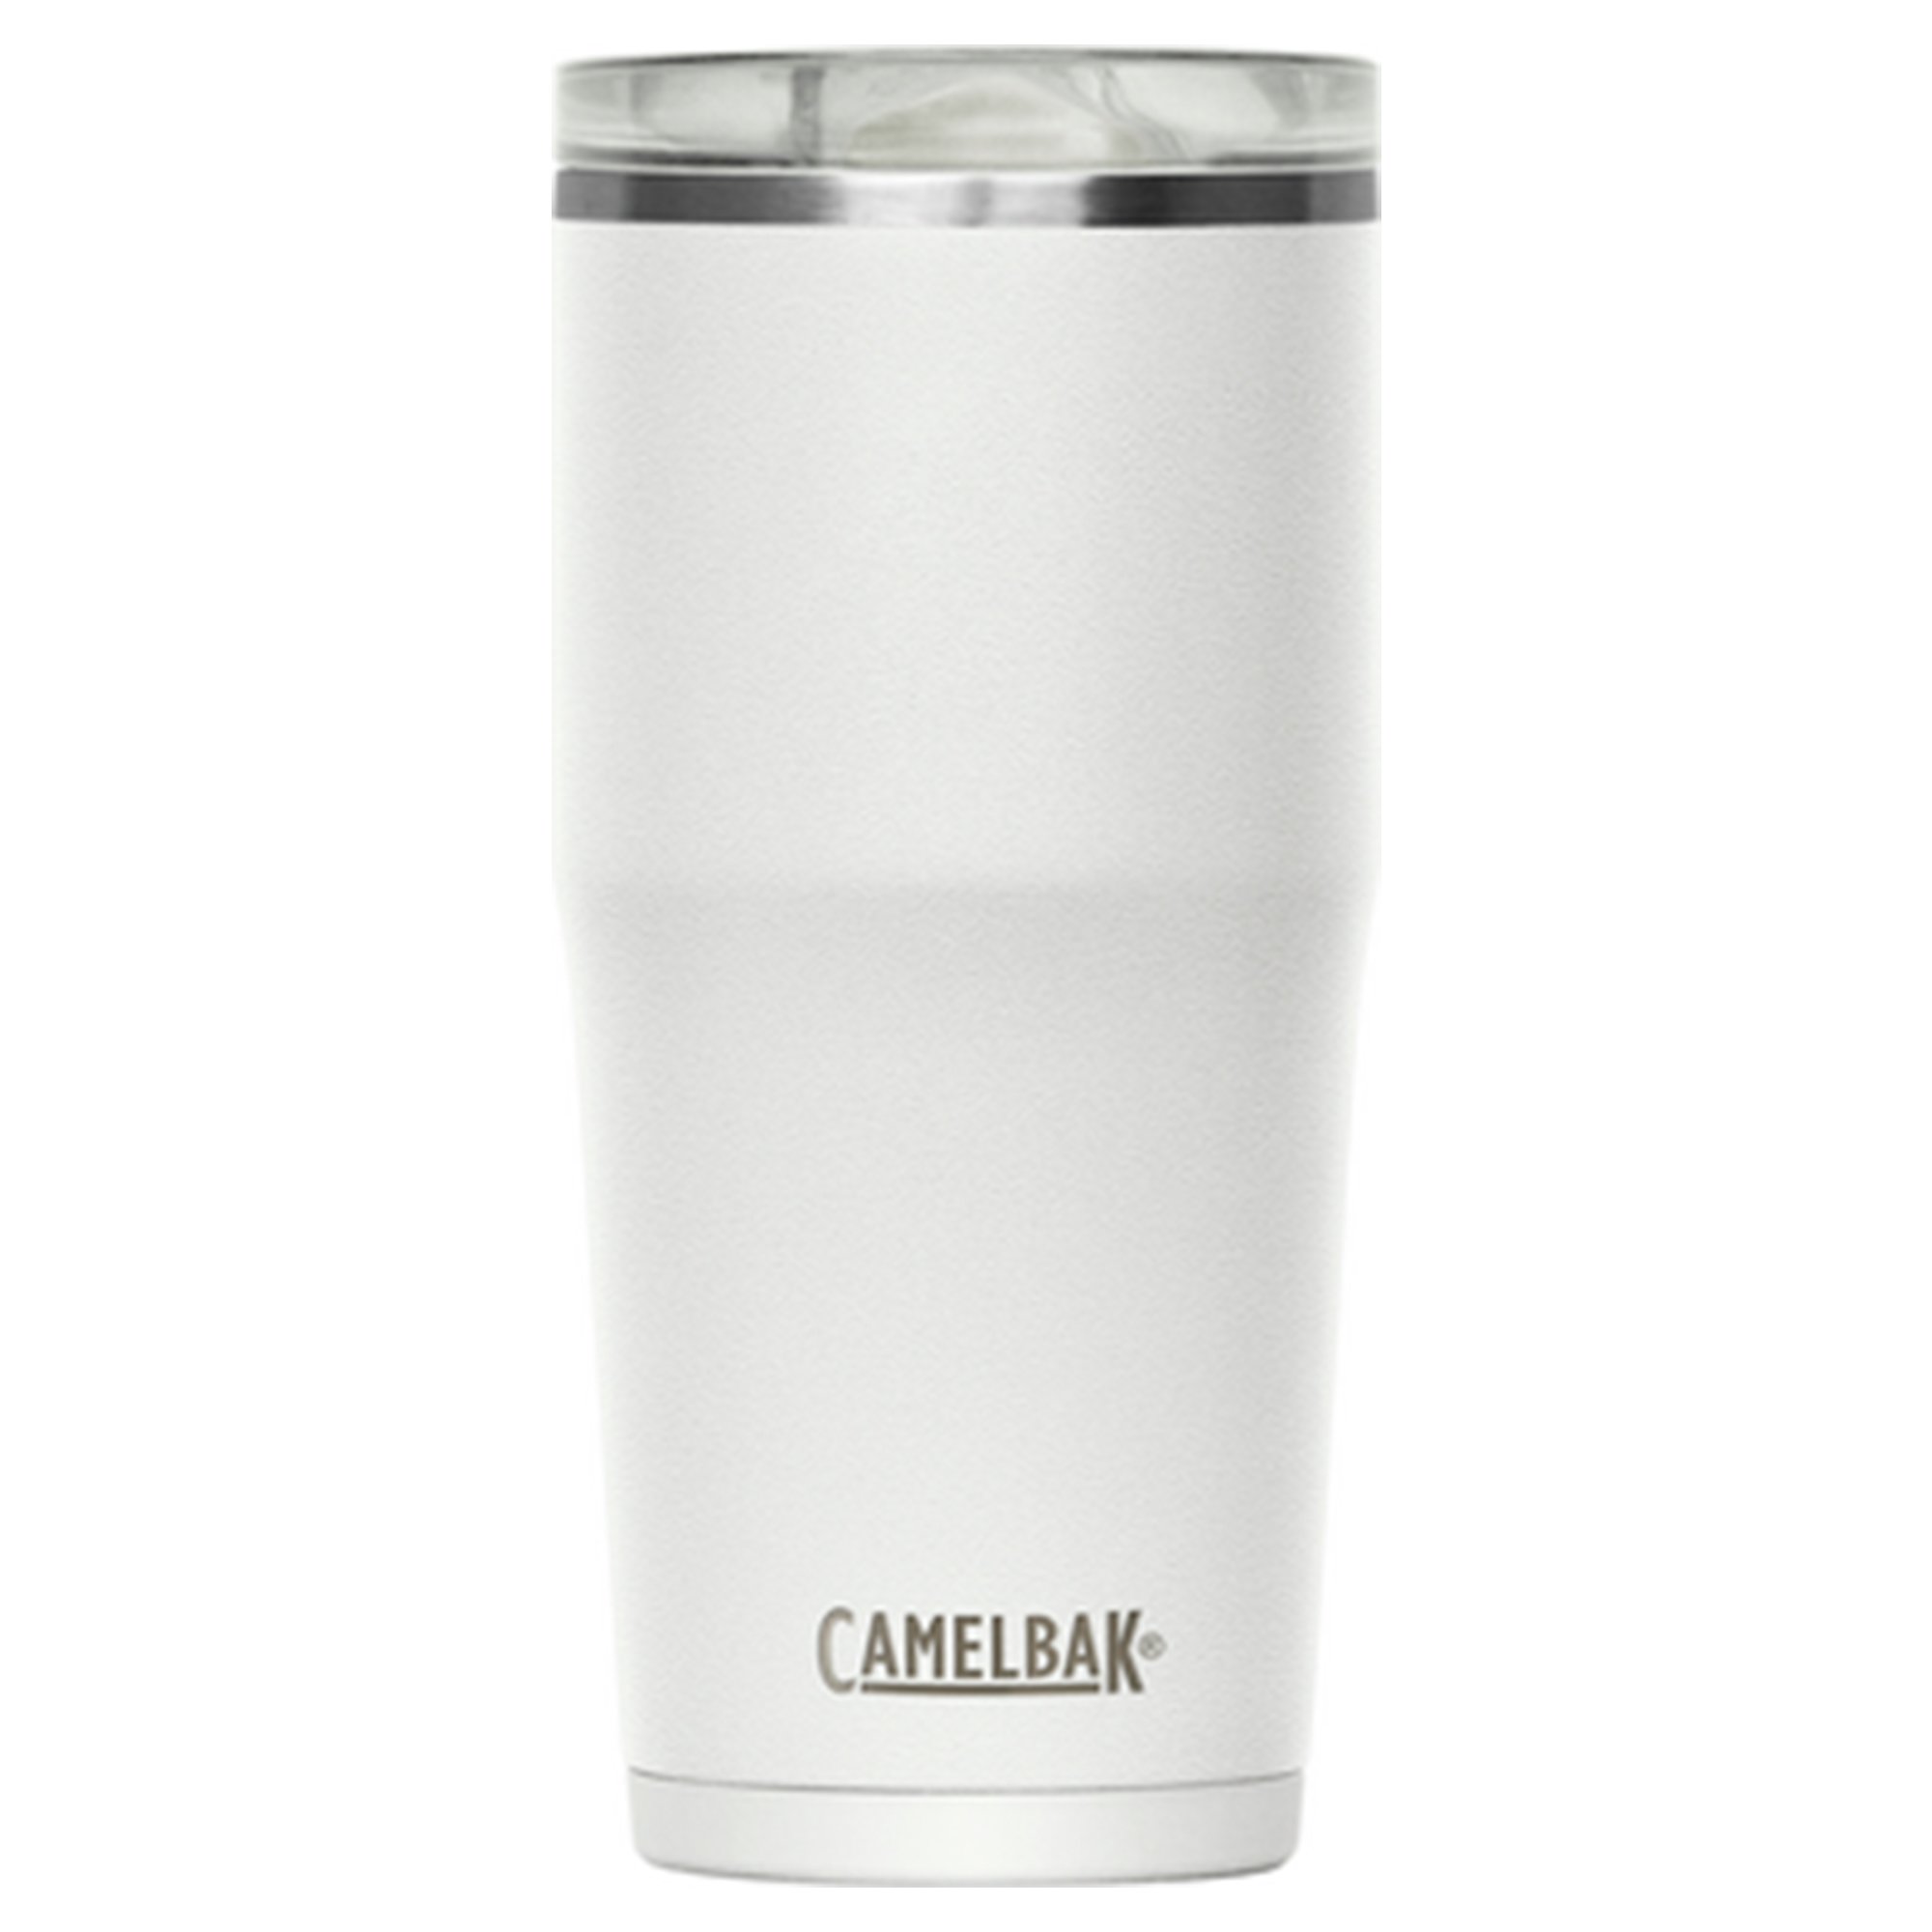 Camelbak Thrive Tumbler termokrus 0.6 liter, white Termokrus